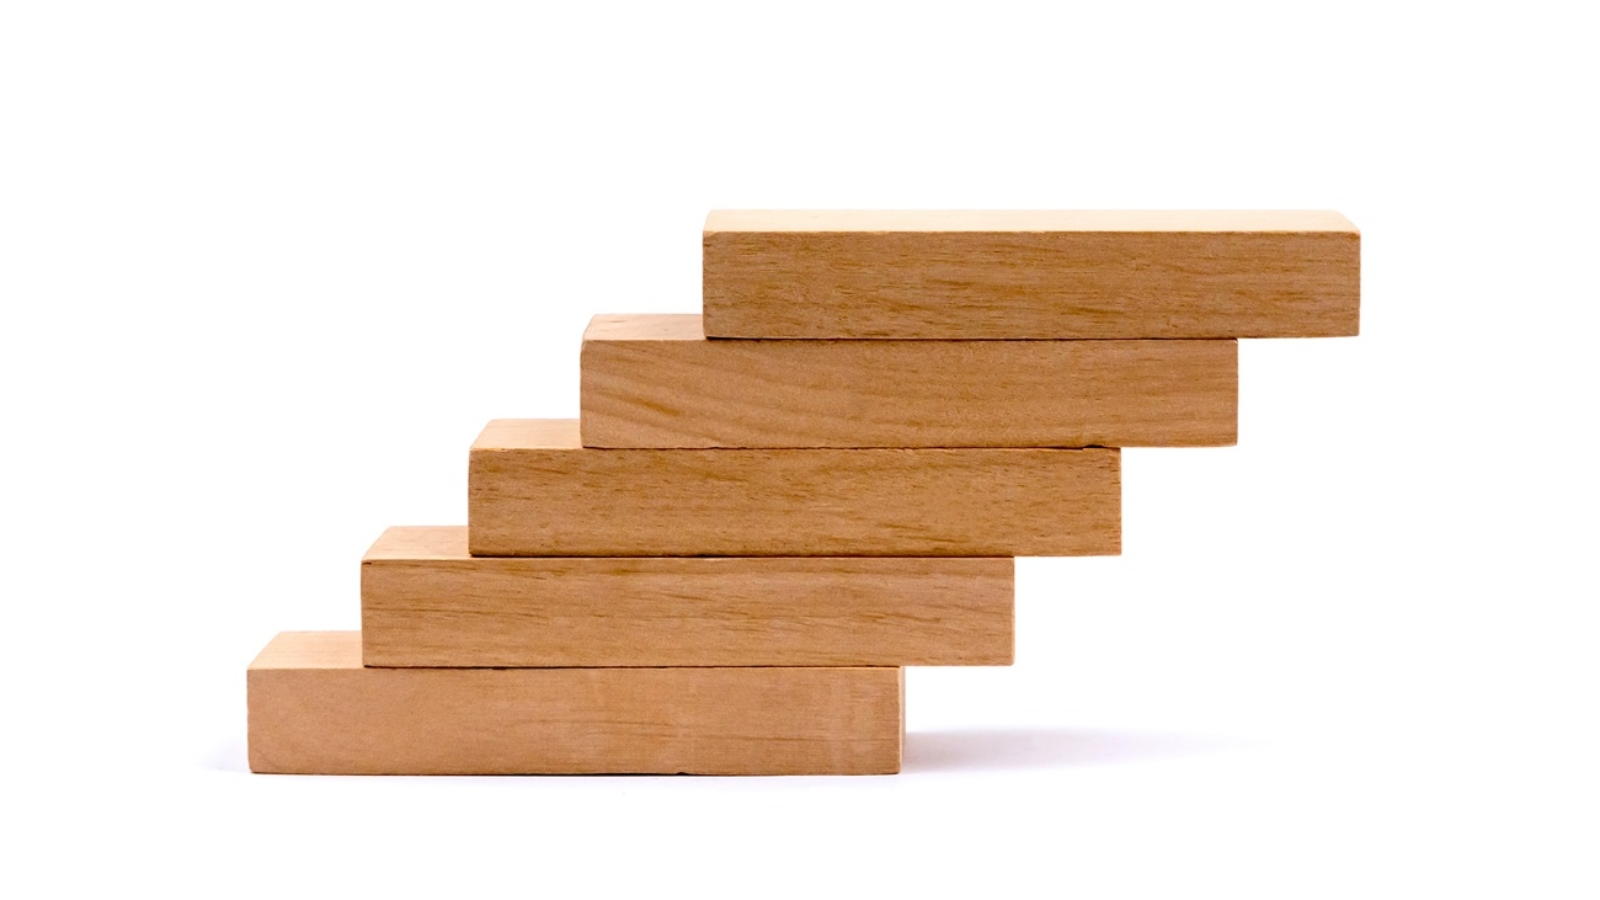 Capa do artigo "Implante um programa ESG". Foto de 5 blocos de madeira empilhados formando uma escada.